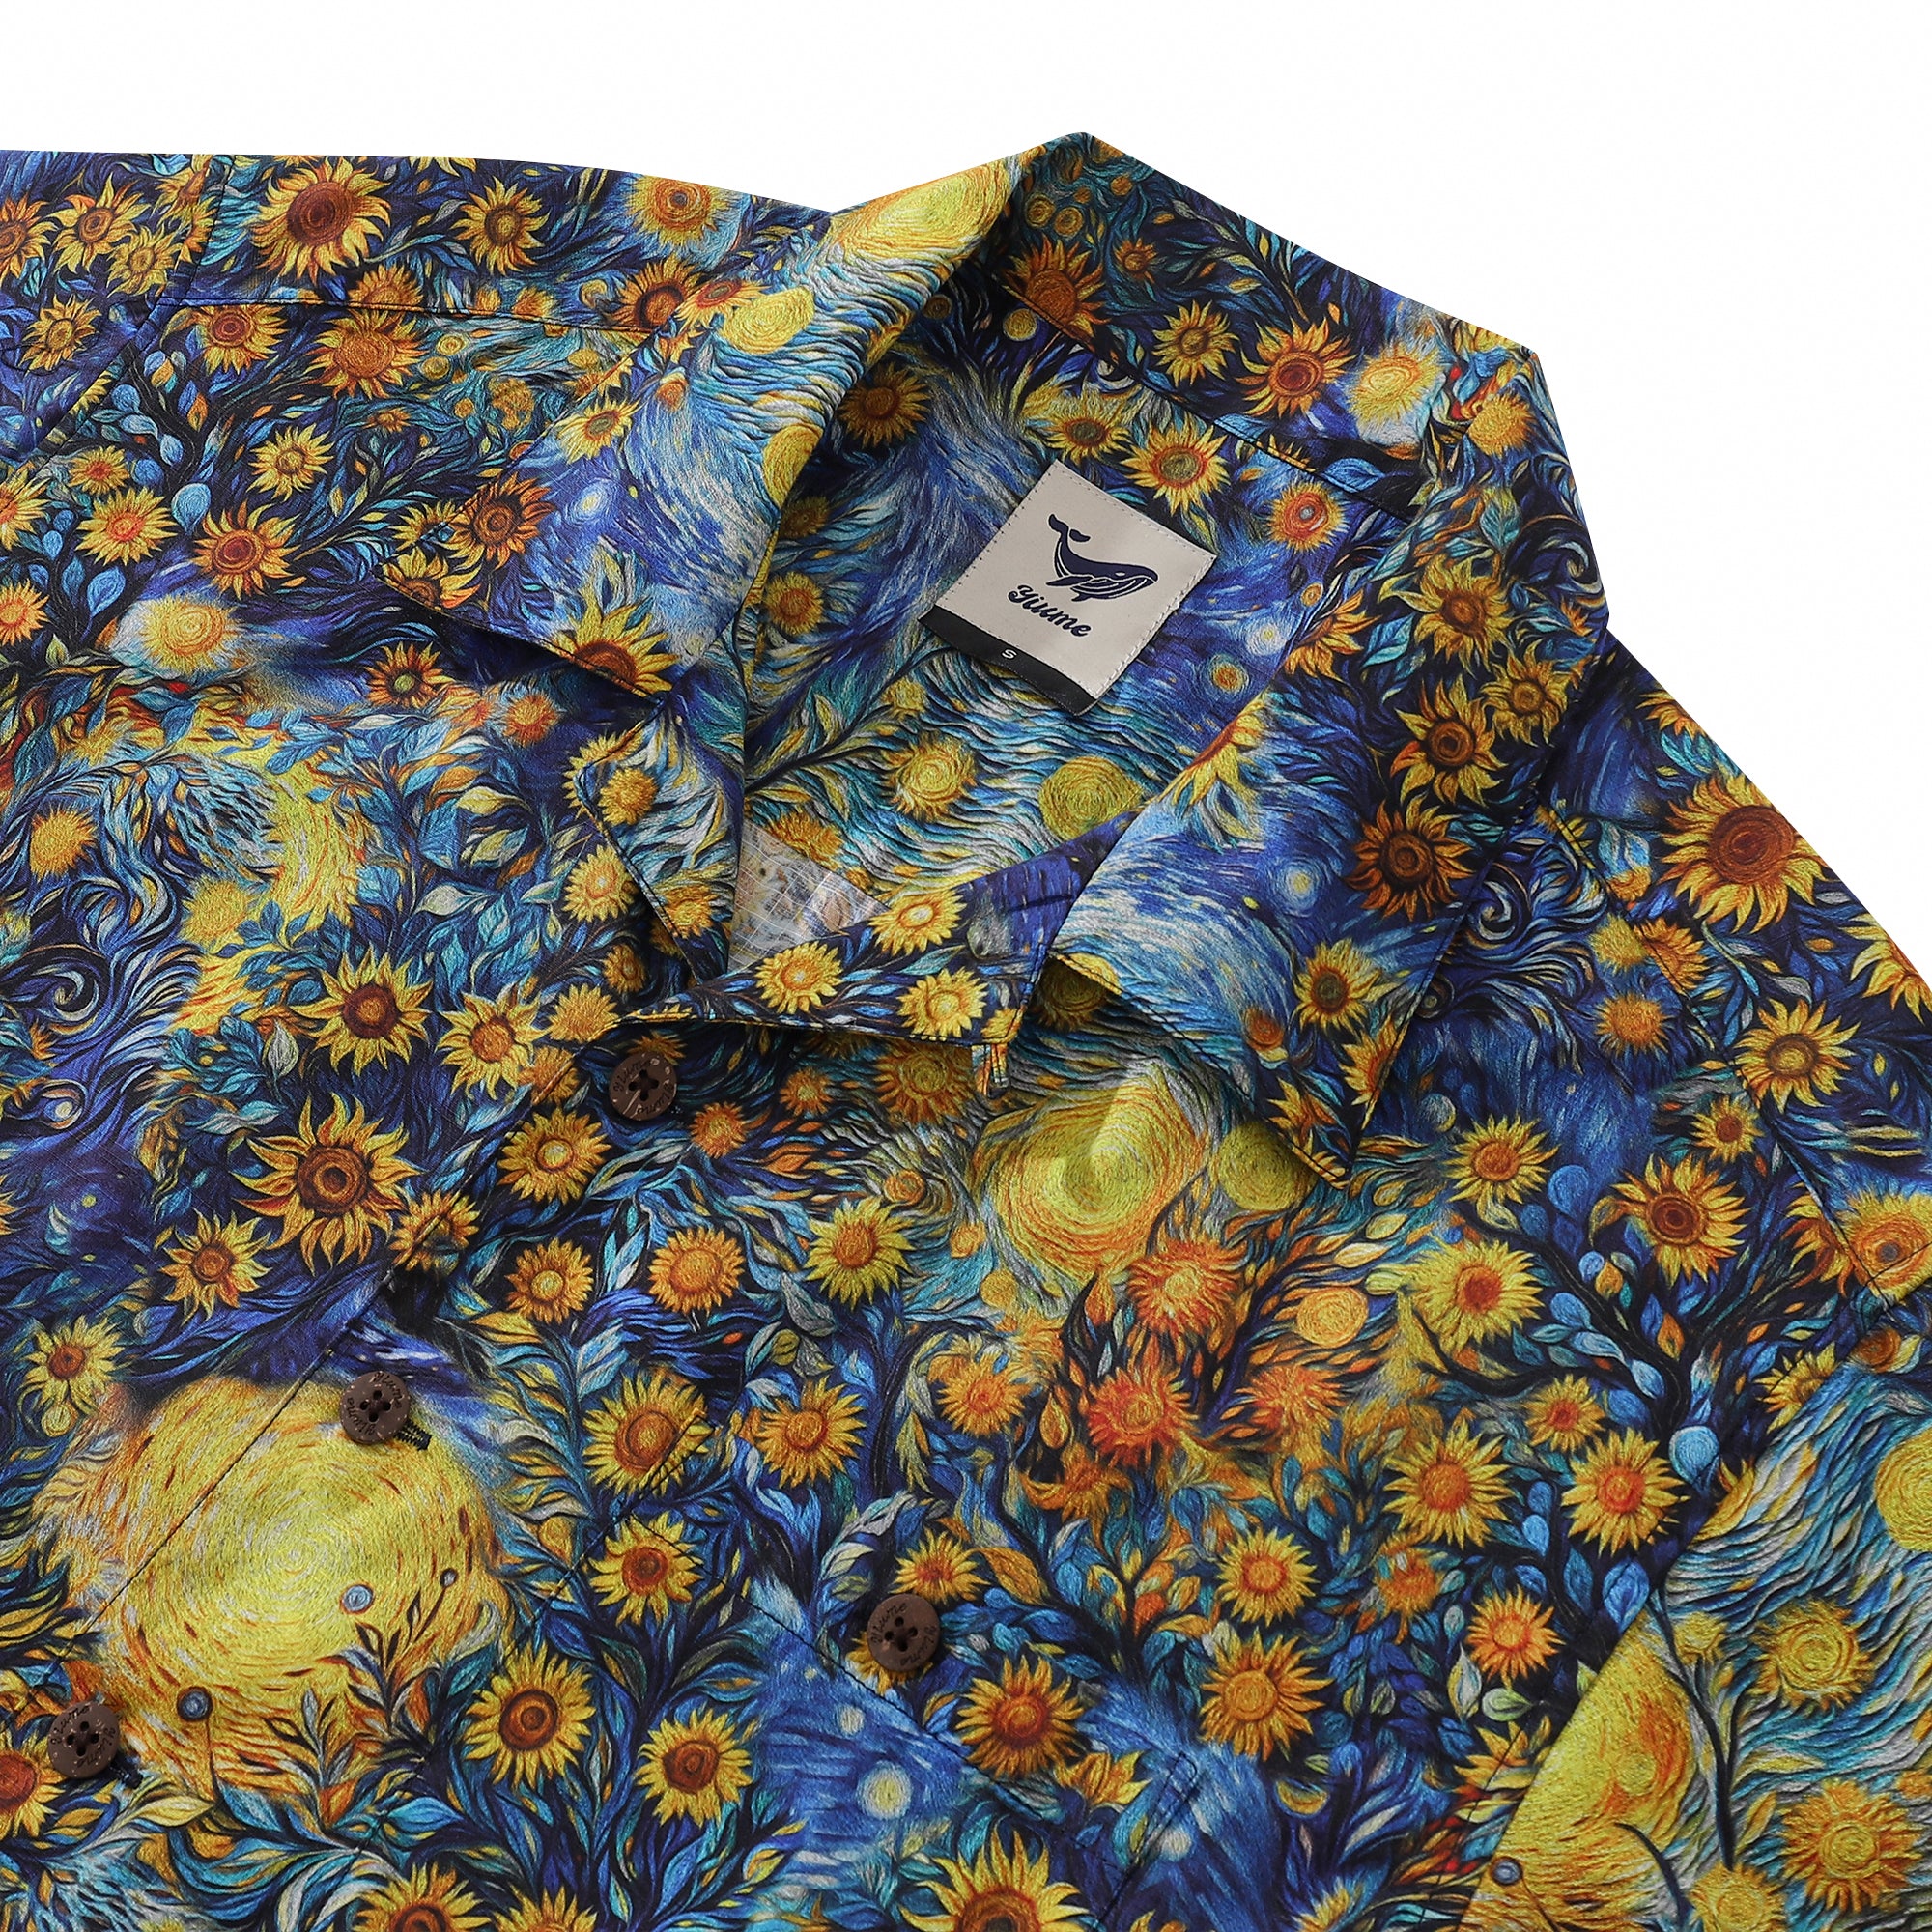 Camisa hawaiana vintage de los años 60 para hombre Camisa de girasol Van Gogh Cuello de campamento 100% algodón